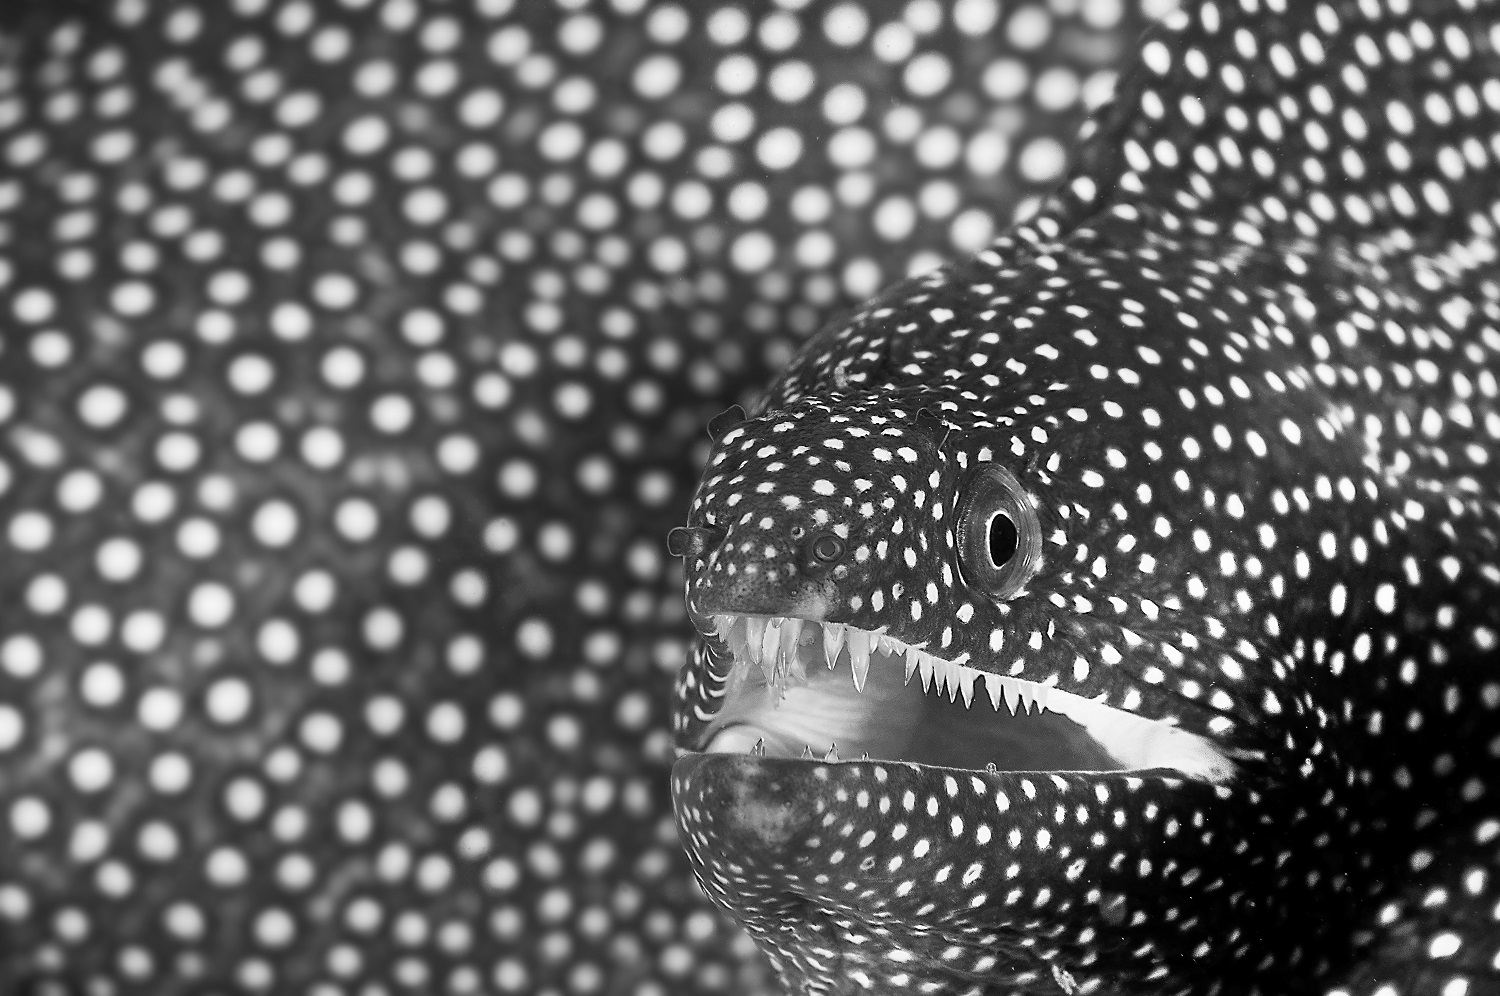 Whitemouth moray eel looking at camera